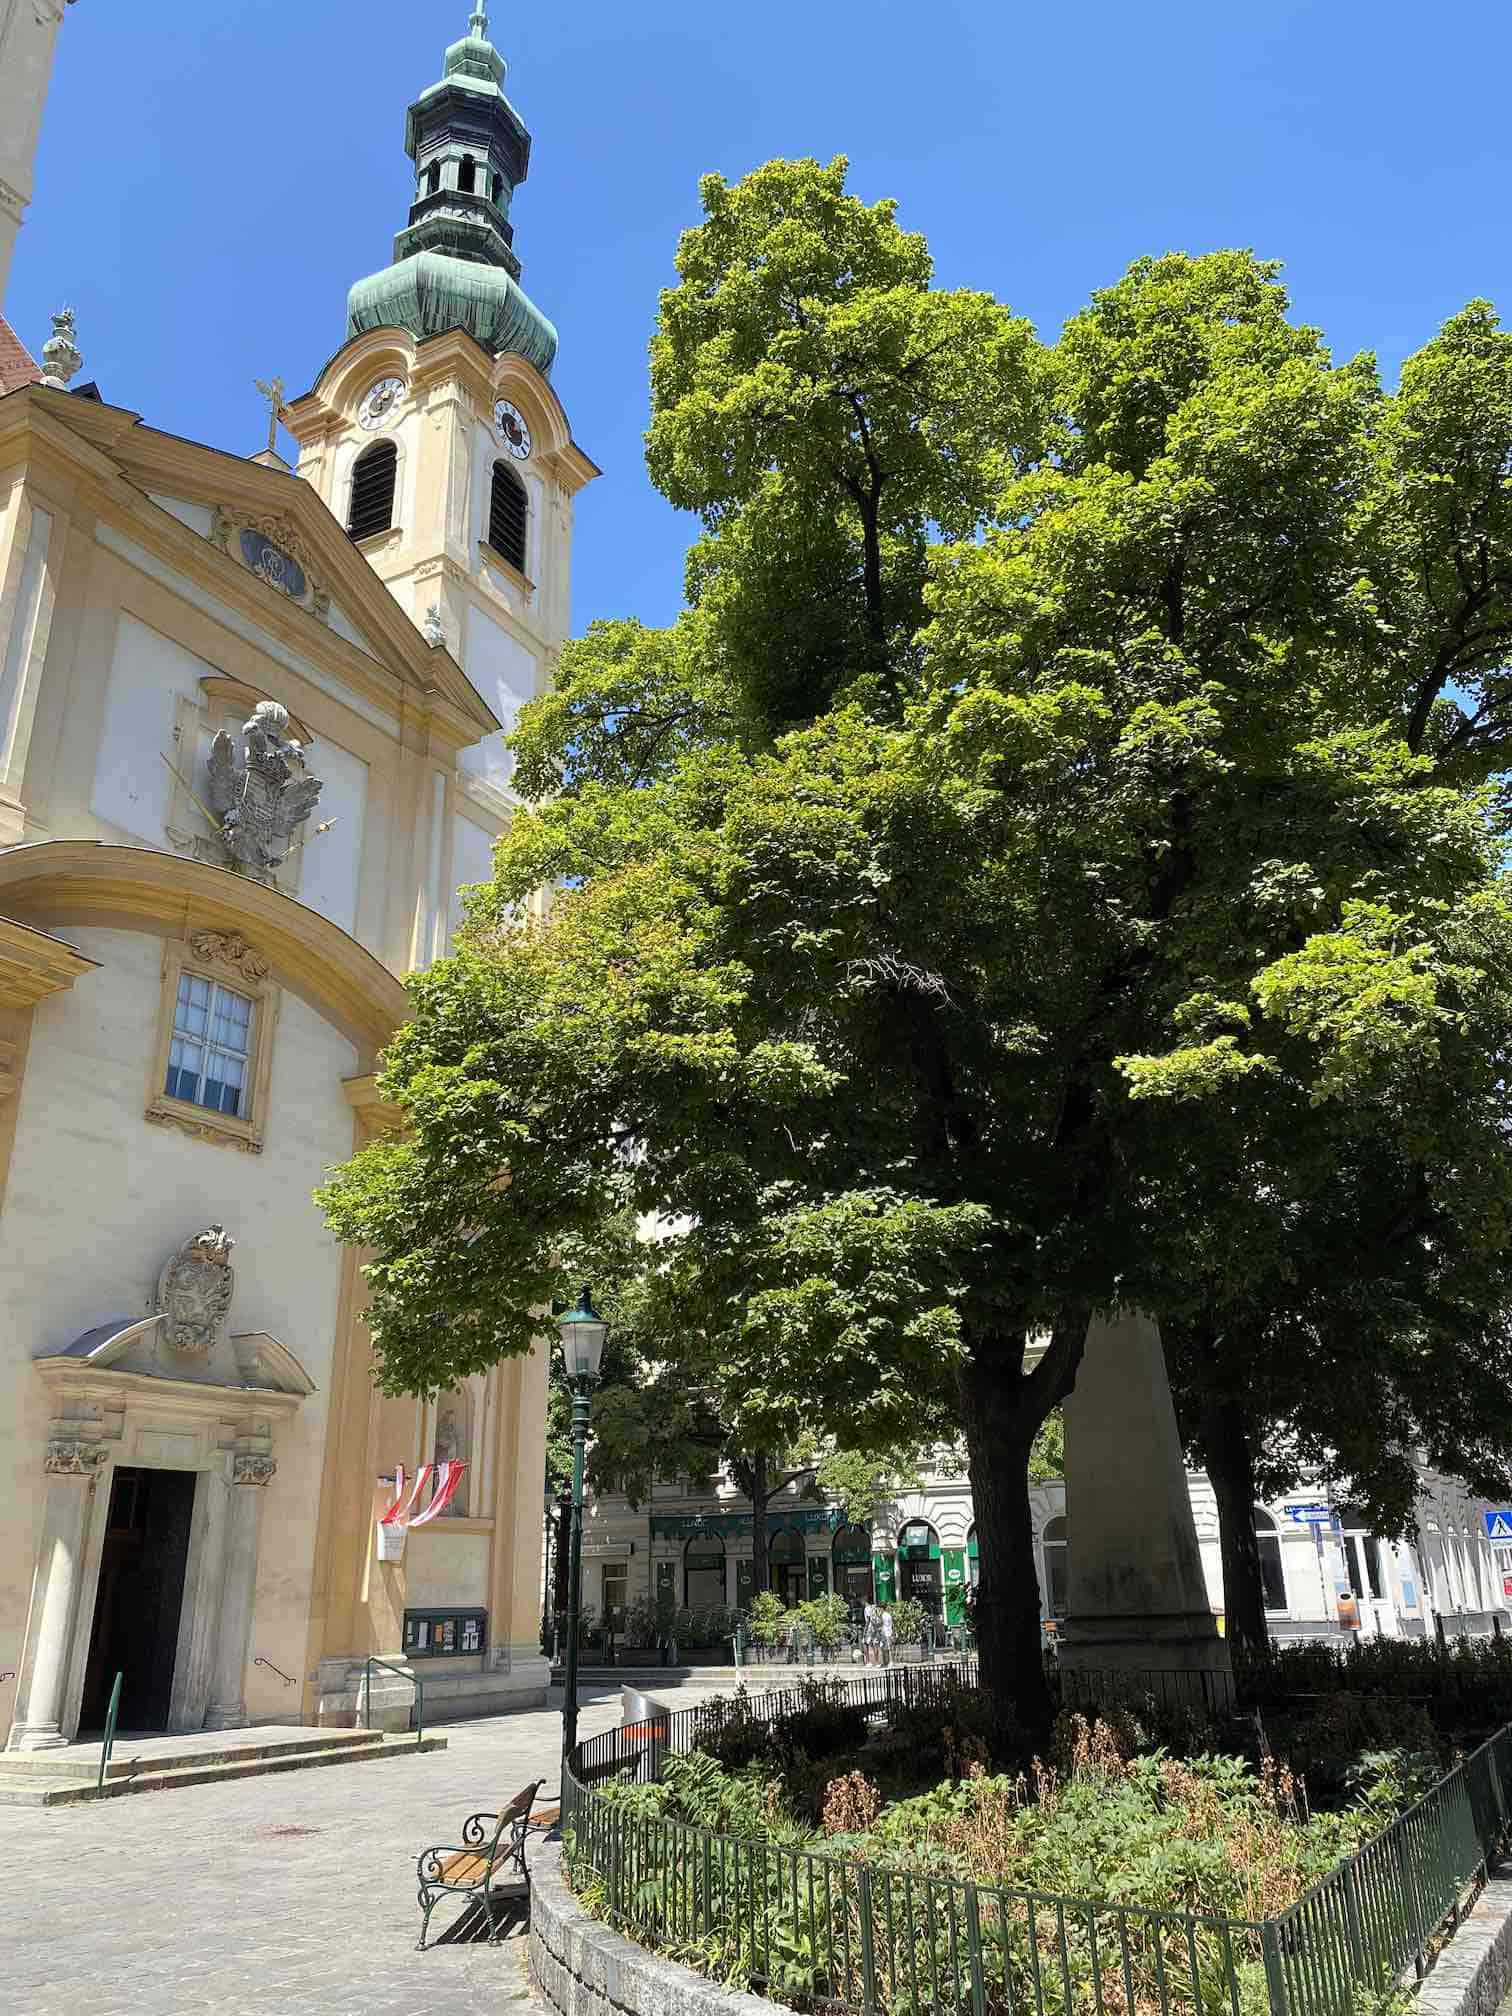 Servitenviertel Wien, Kirche mit Vorplatz, Baum und Bepflanzung, sonniger Tag, blauer Himmel